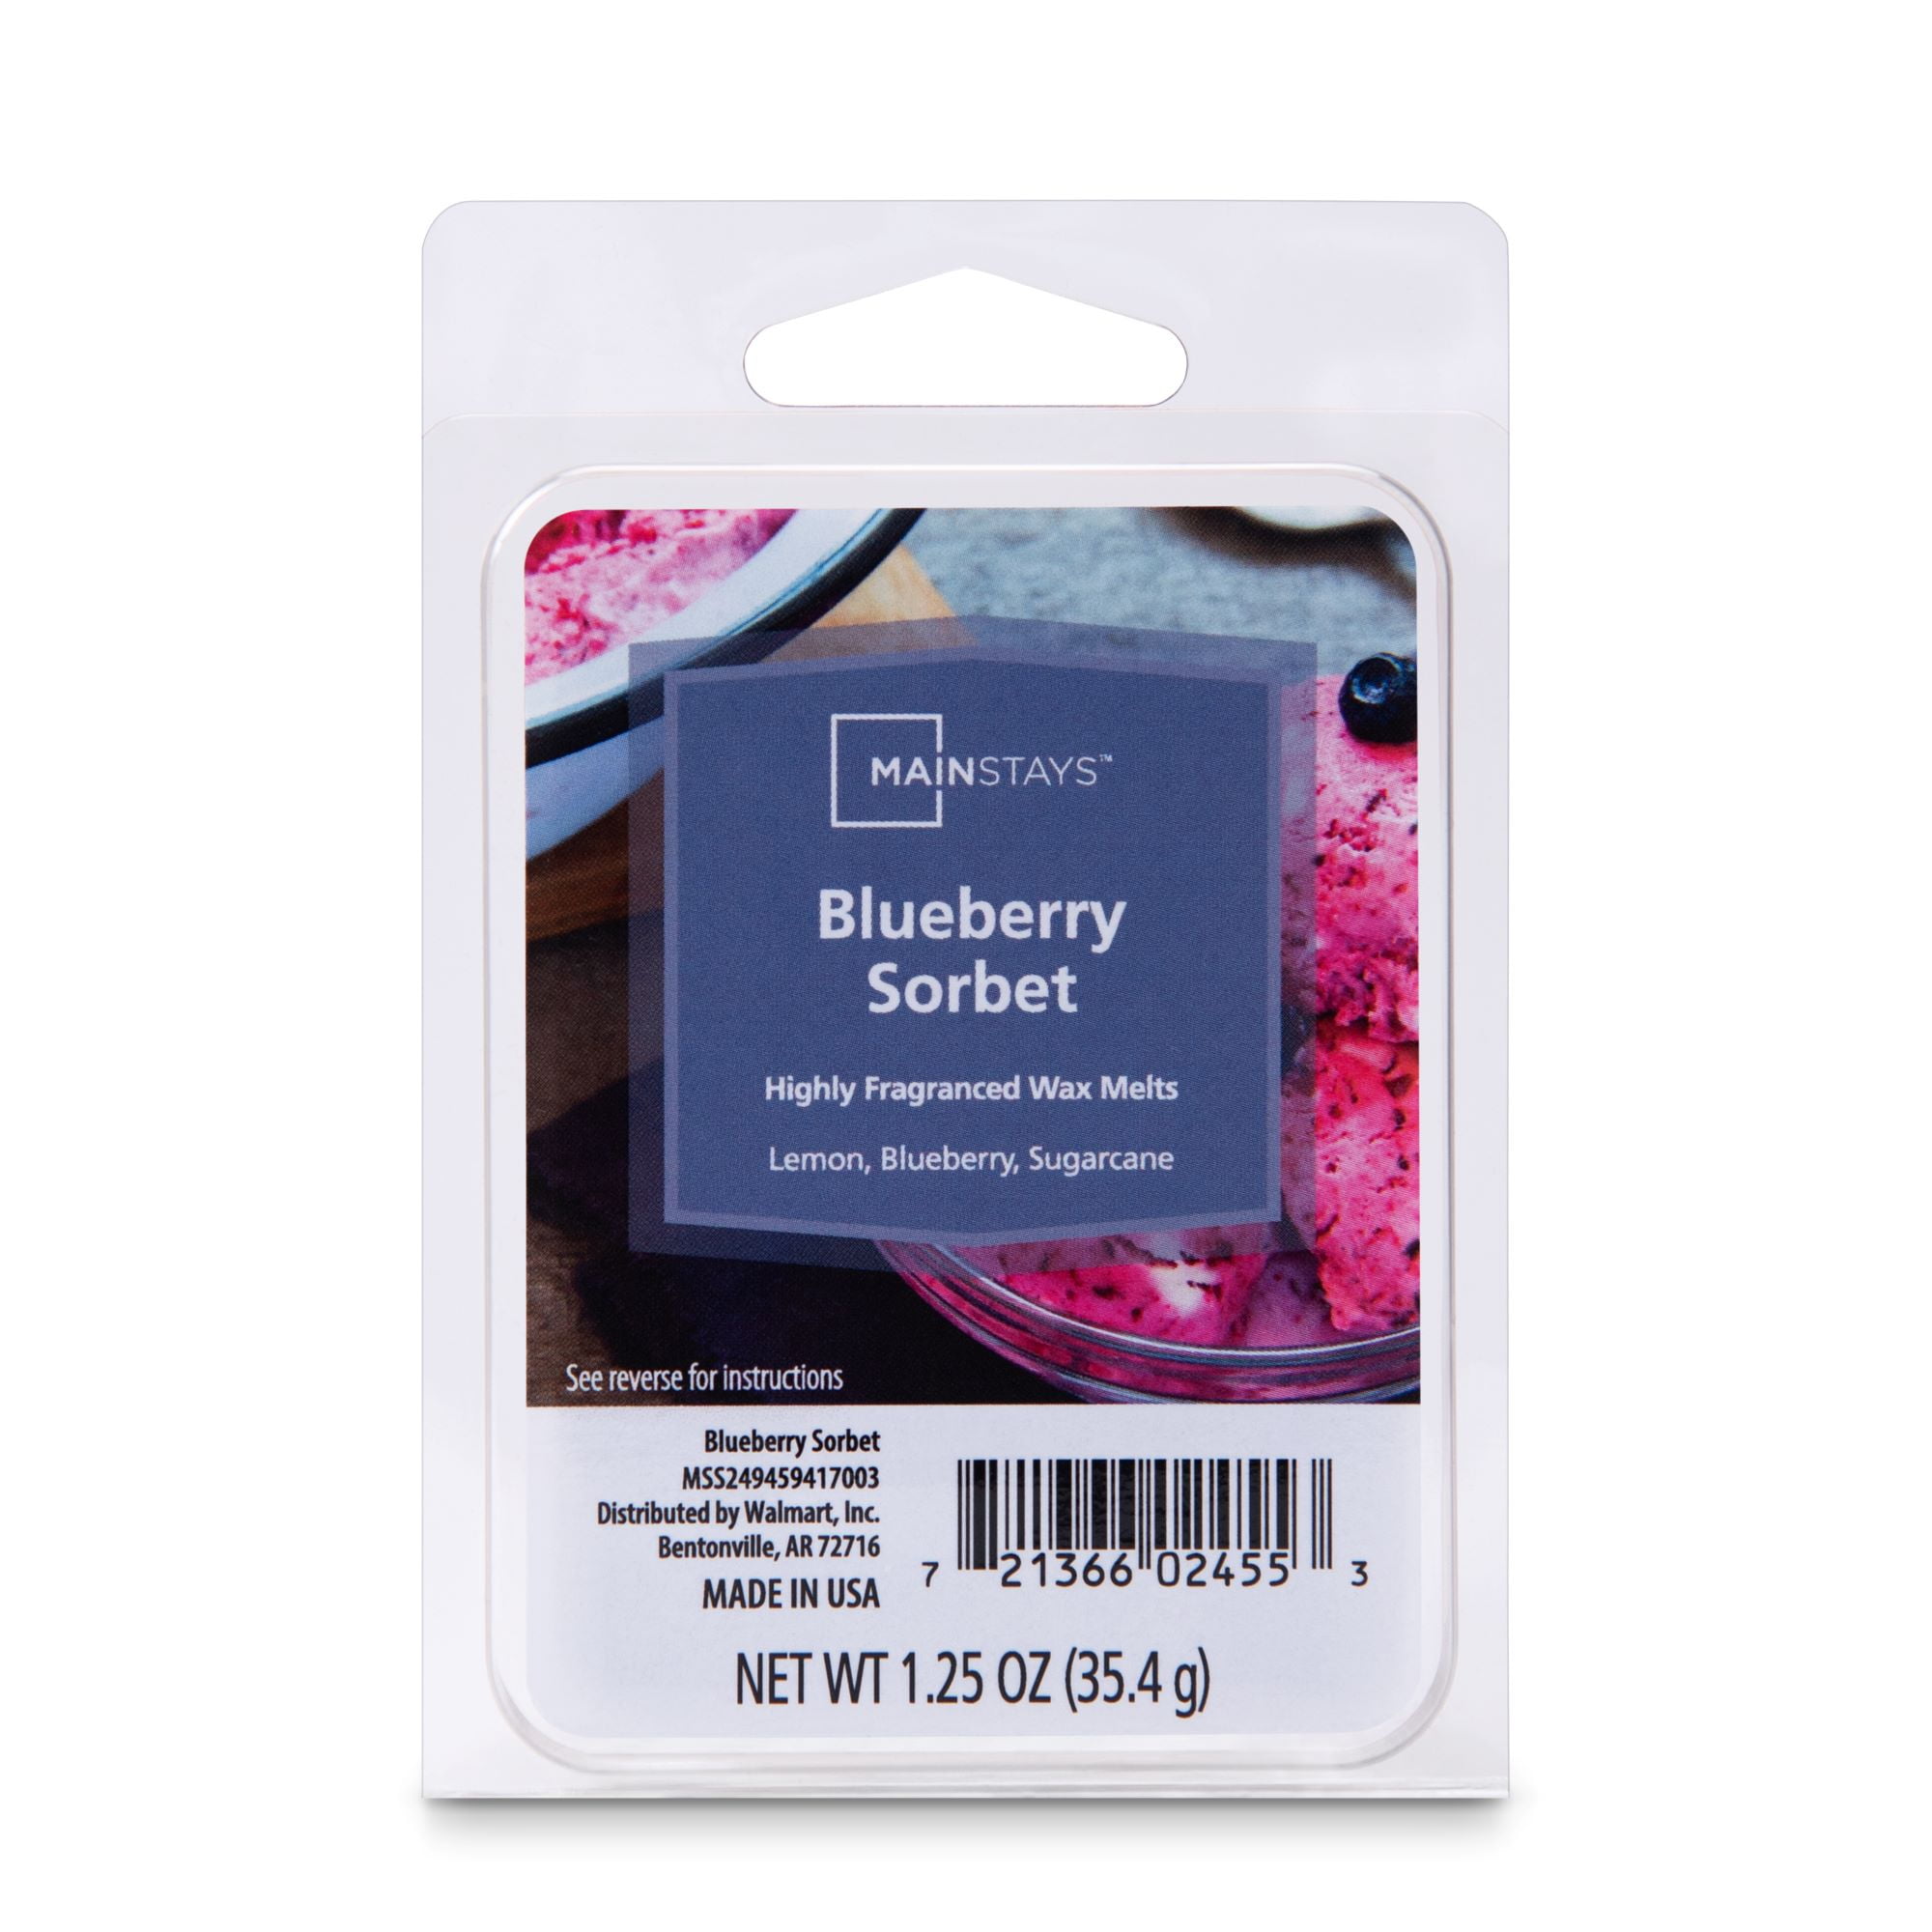 Mainstays 6 Cube Wax Melts, Blueberry Sorbet, 1.25 oz